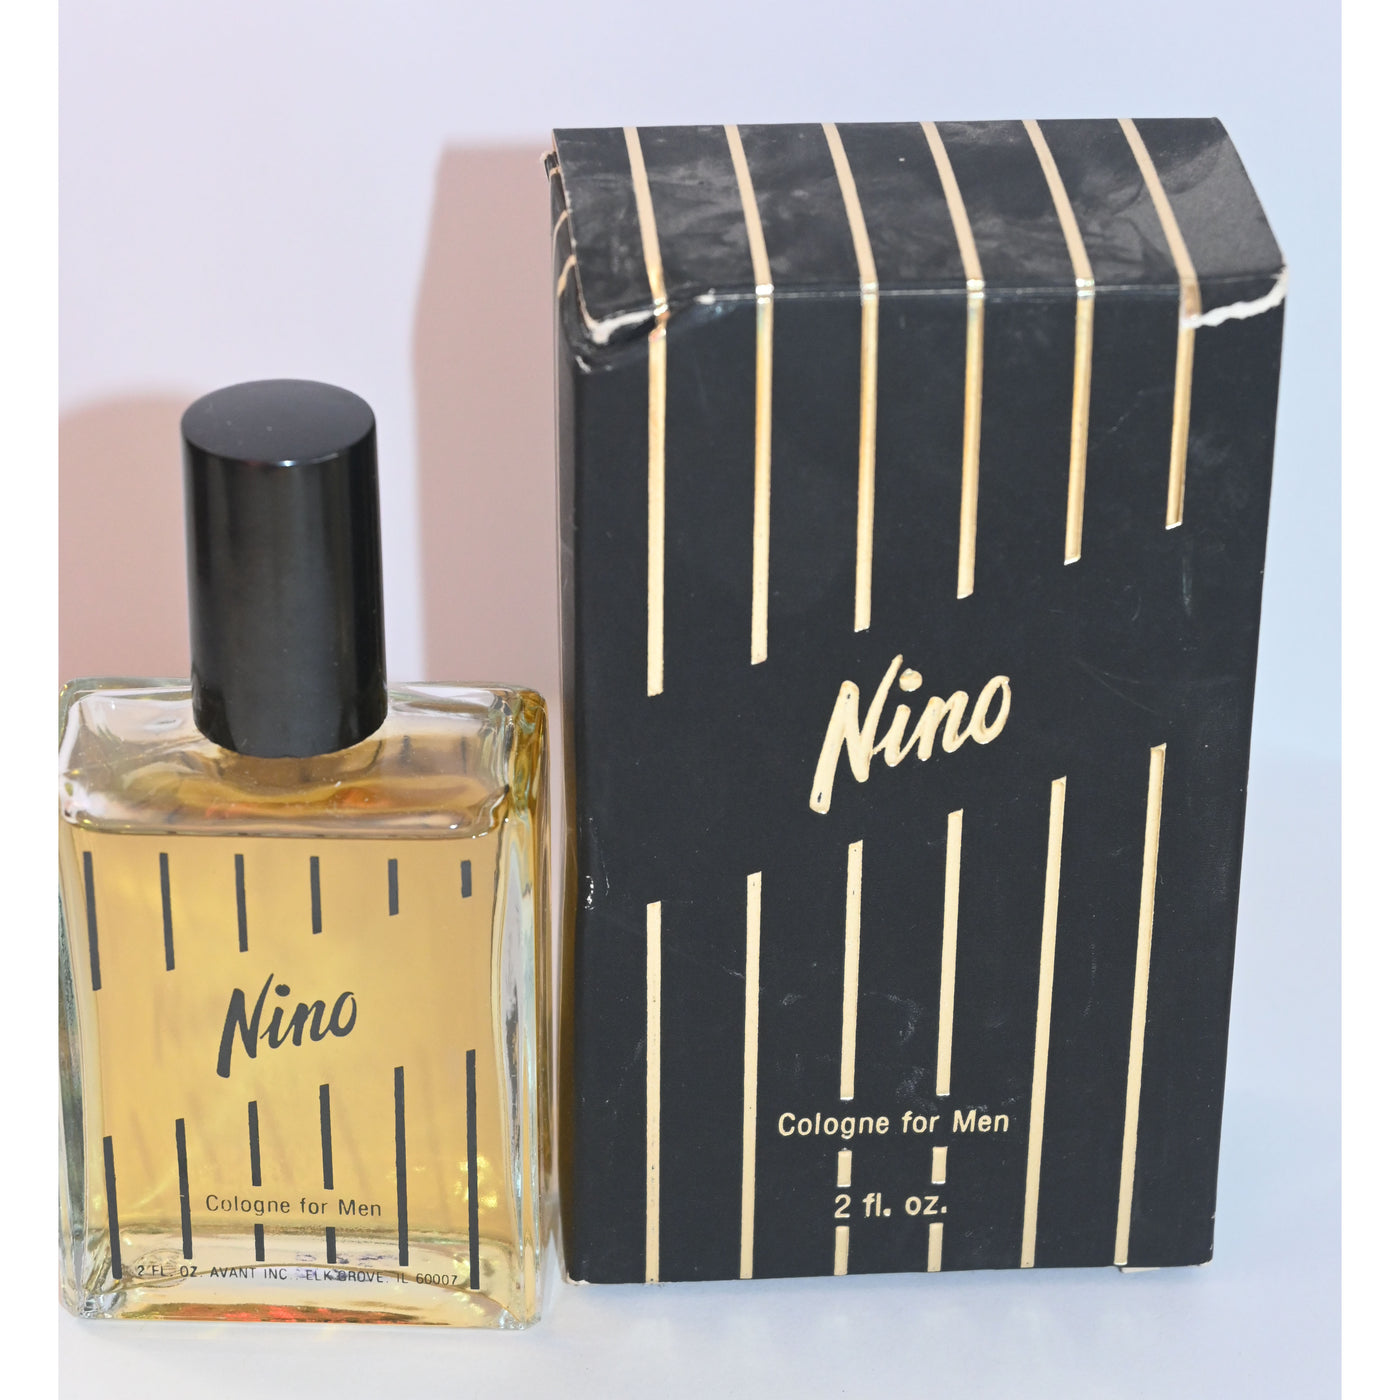 Nino Cologne For Men From Avant